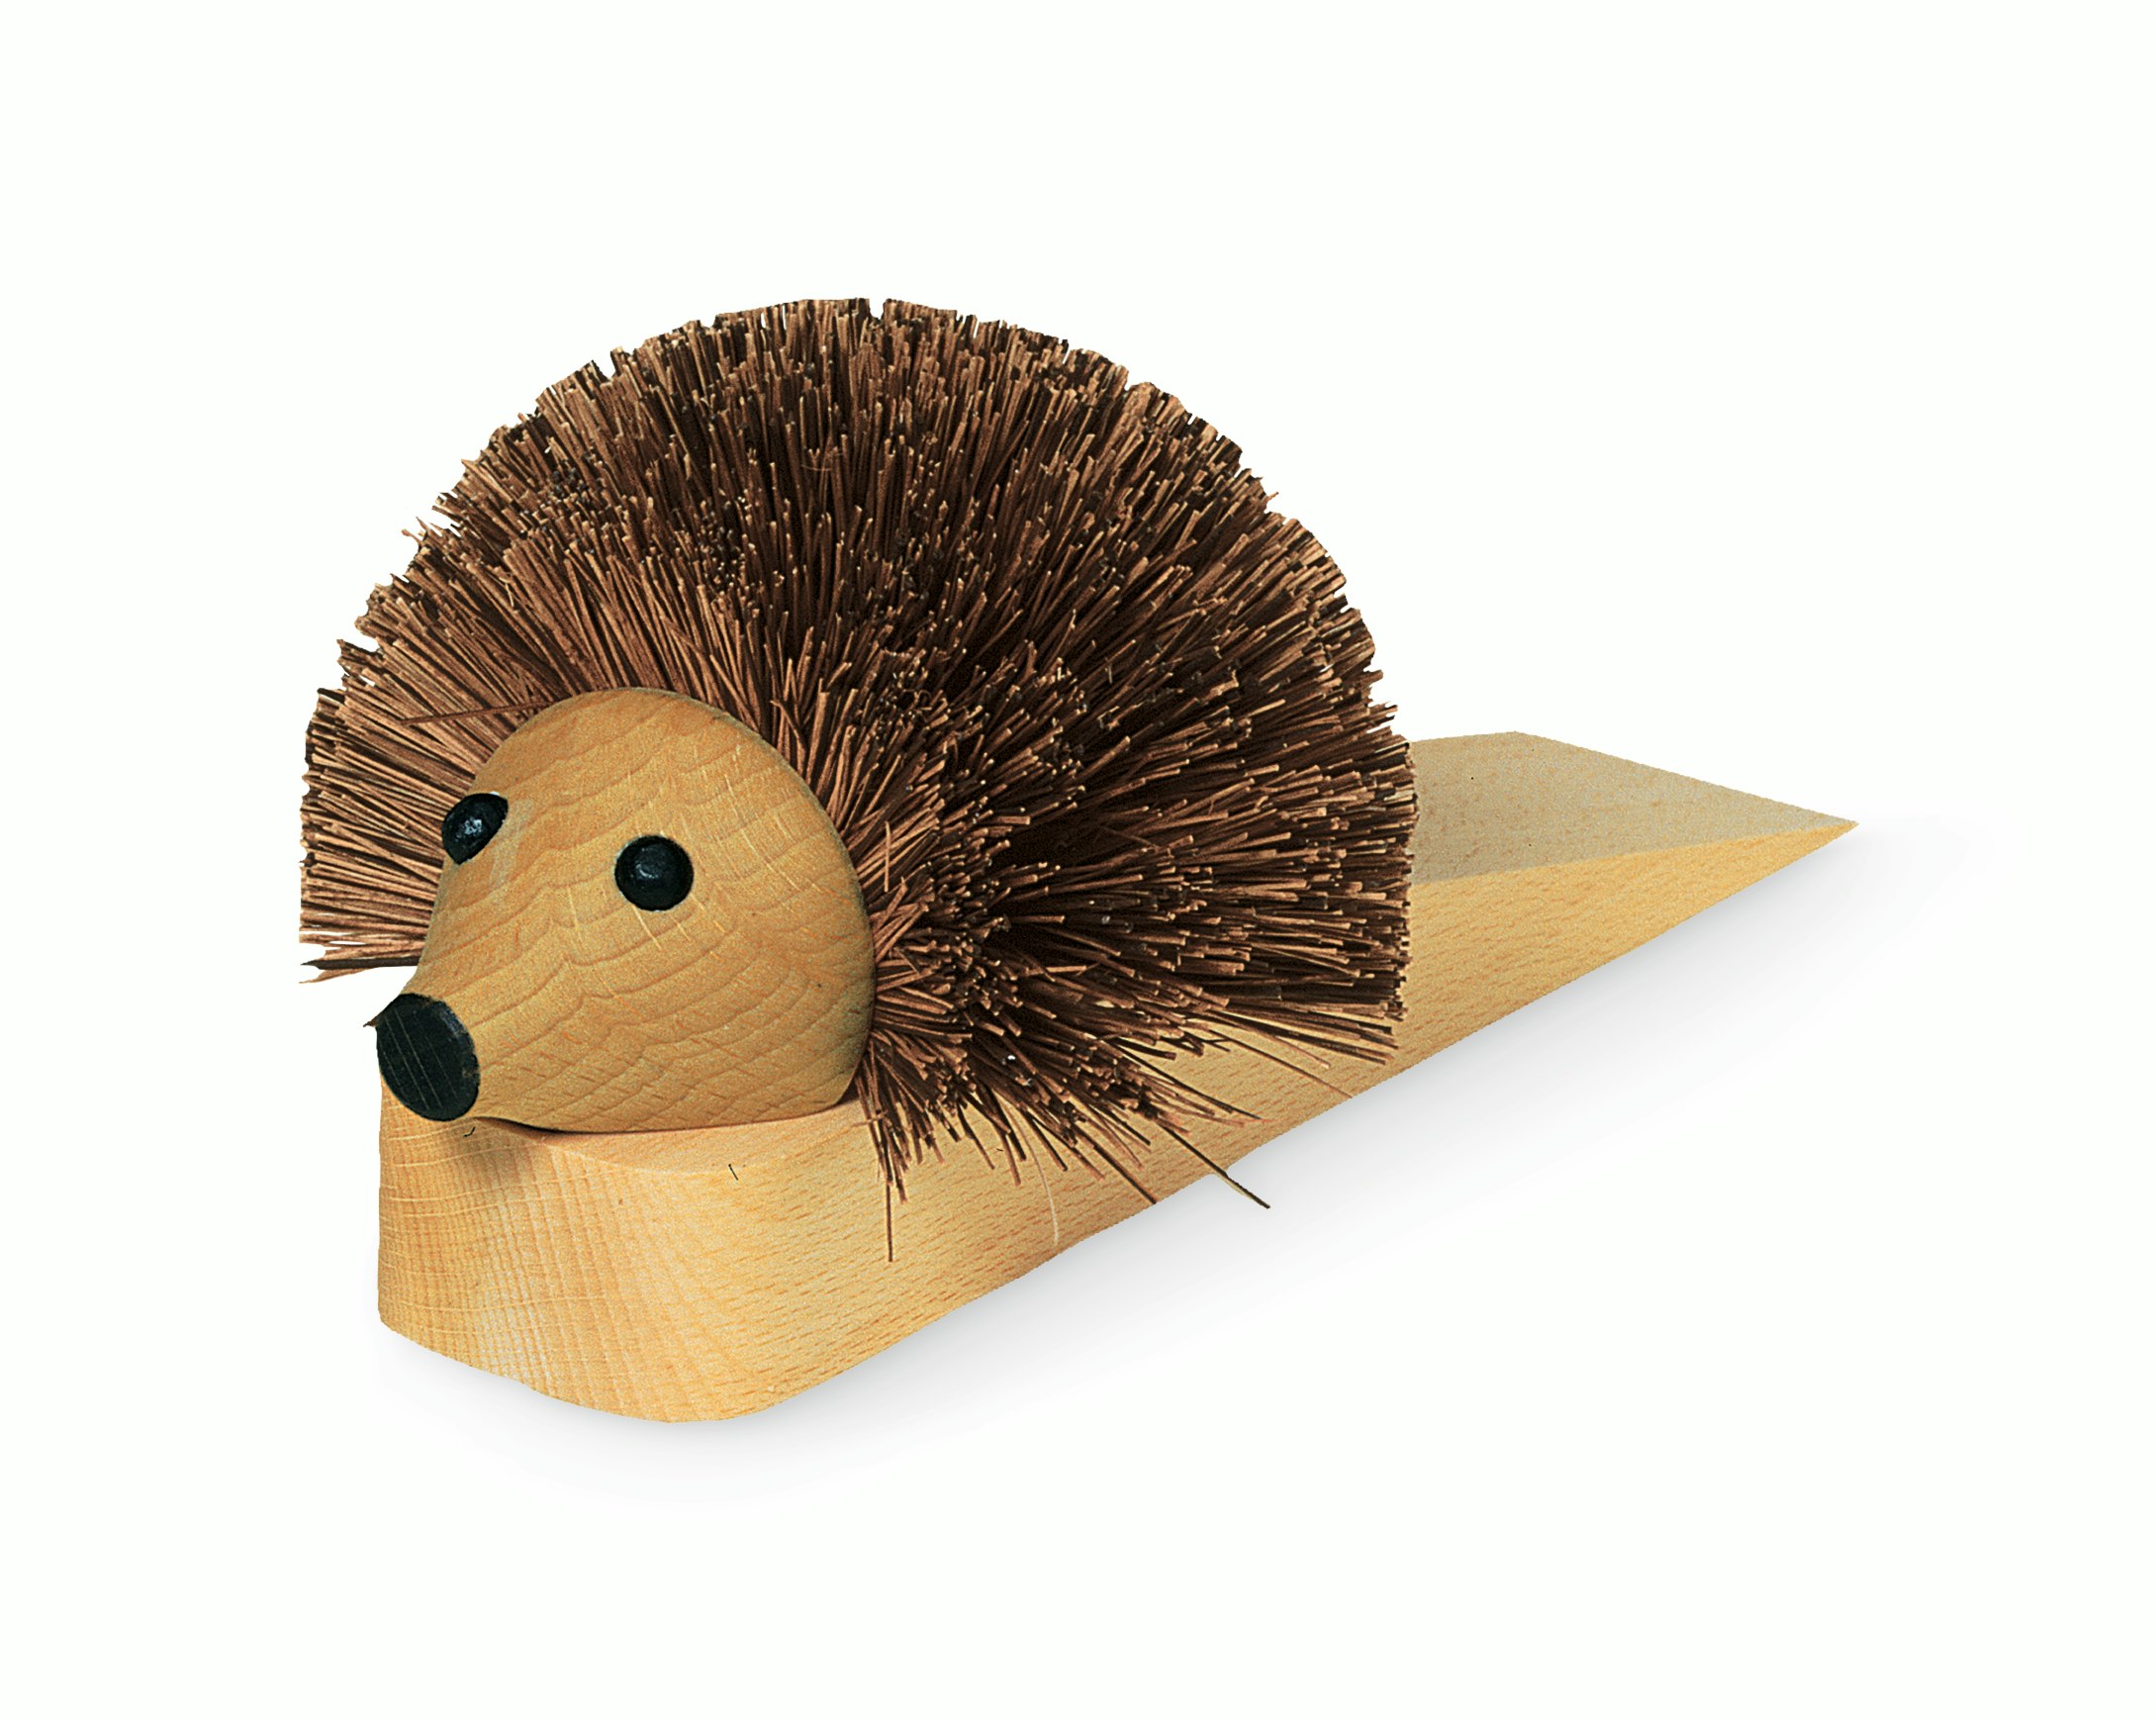 Redecker Hedgehog Wooden Door Stop 10-1/2 Inches Long 